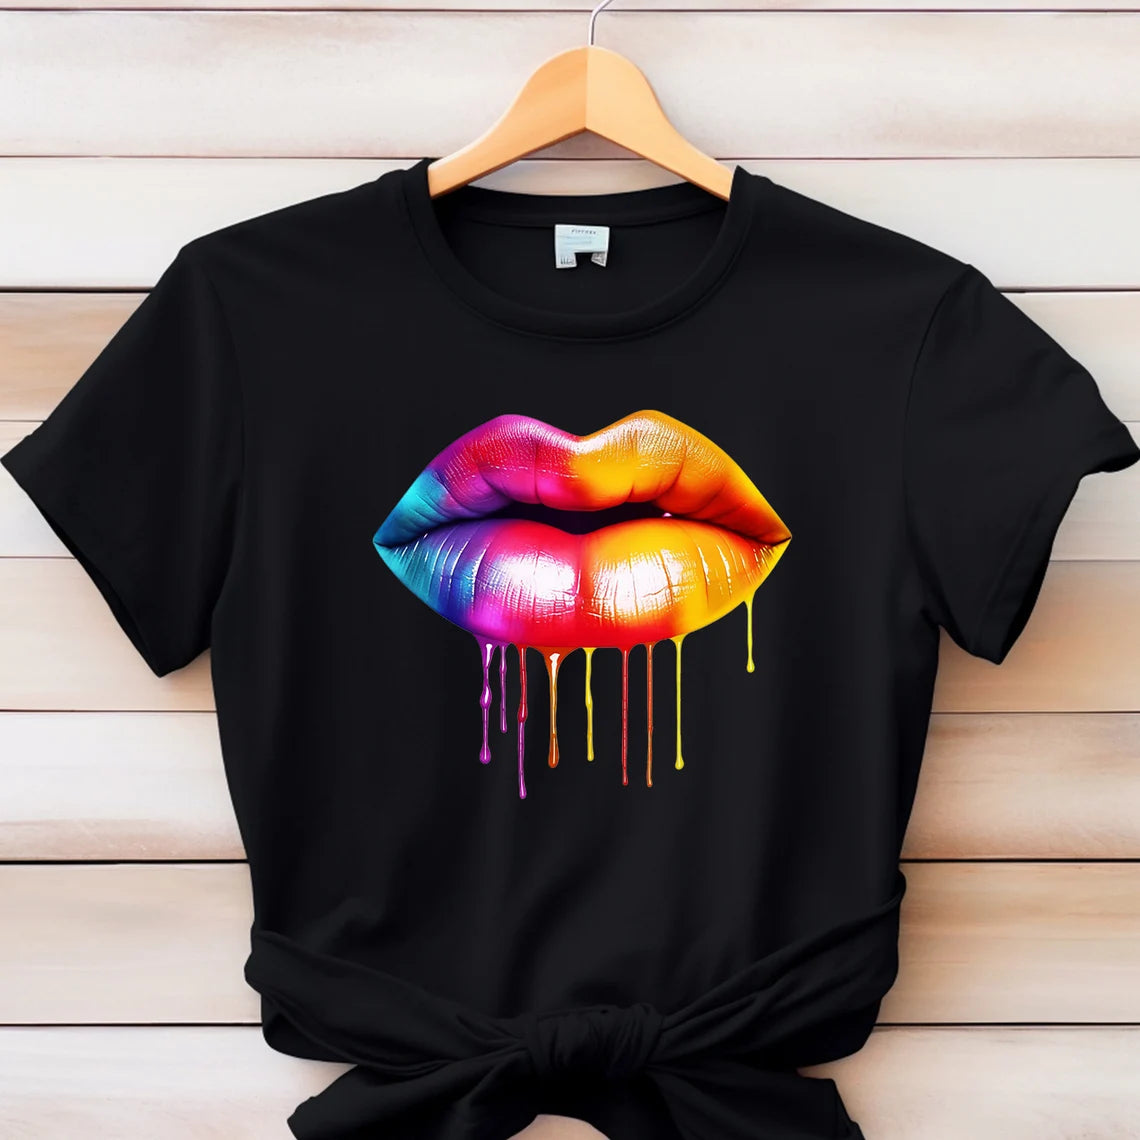 Watercolor hot lips Tshirt, Colorful lips Shirt, Melting lips Tee, LGBT Shirt, Pride Shirt, Trans Pride,Gay Pride Awareness